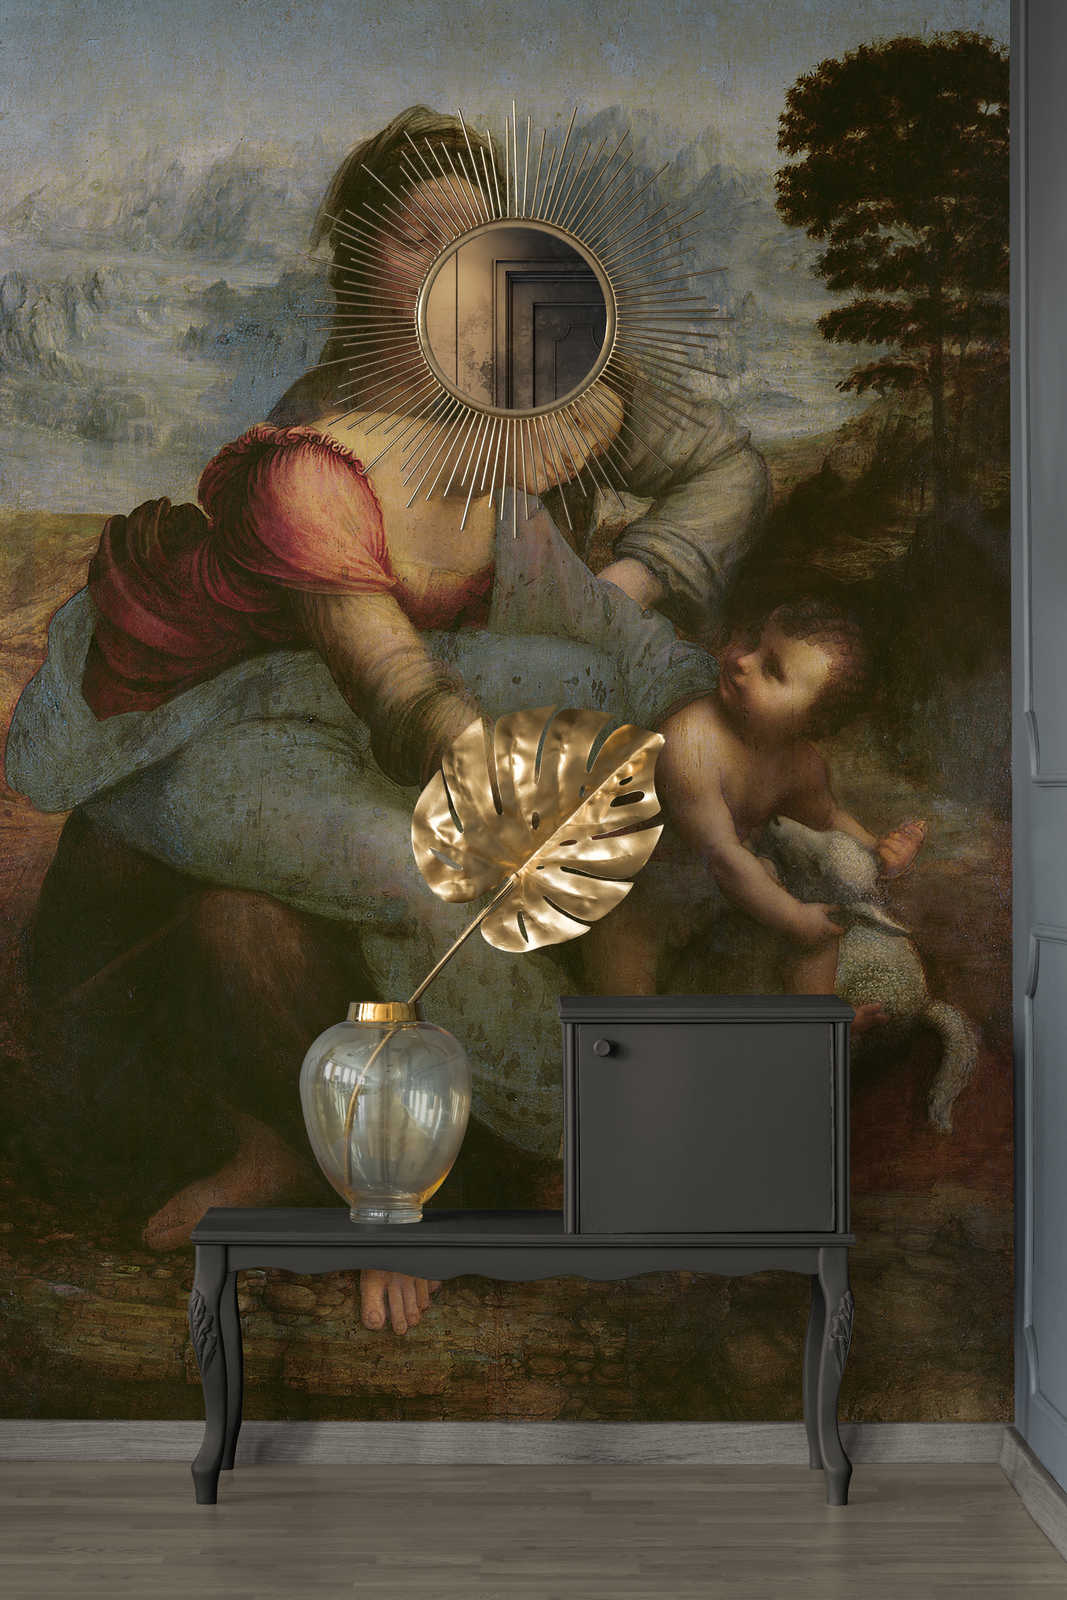             Papel pintado fotográfico "La Virgen y el Niño con Santa Annaum" de Leonardo da Vinci
        